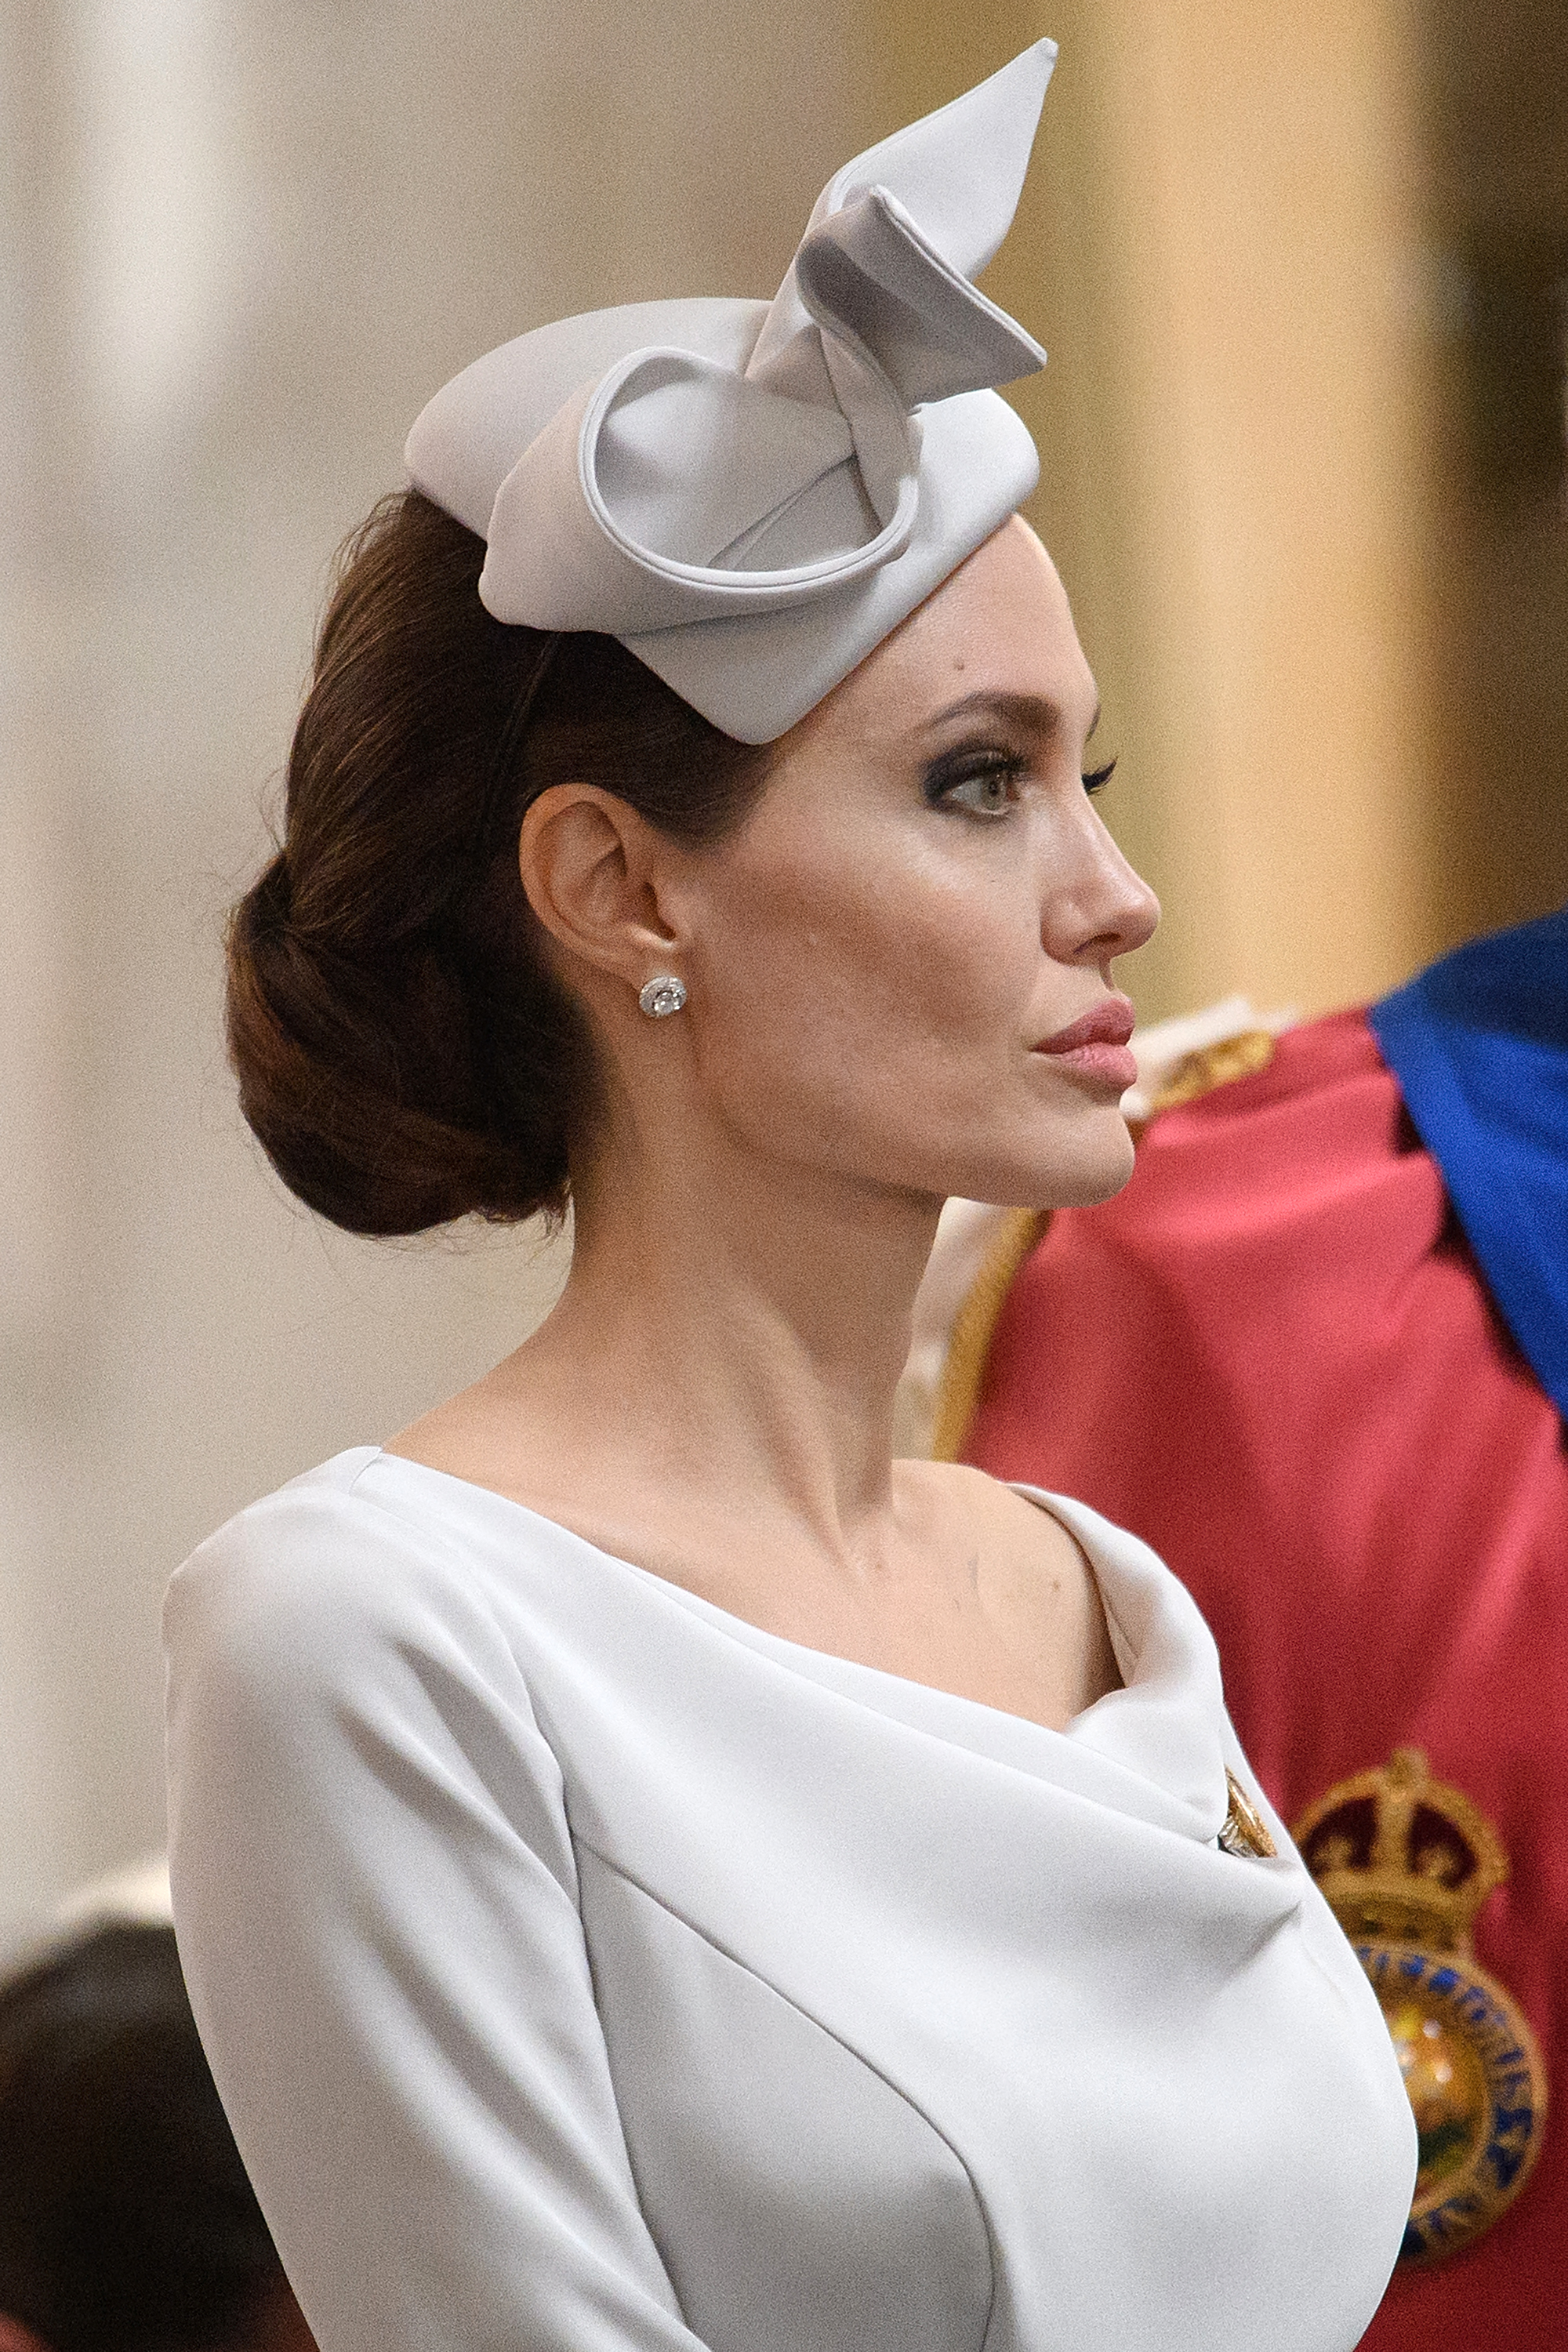 Angelina Jolie arrive avant le service de commémoration et de dédicace, marquant le 200e anniversaire de l'Ordre très distingué de Saint-Michel et Saint-Georges à la cathédrale Saint-Paul de Londres, le 28 juin 2018. | Source : Getty Images